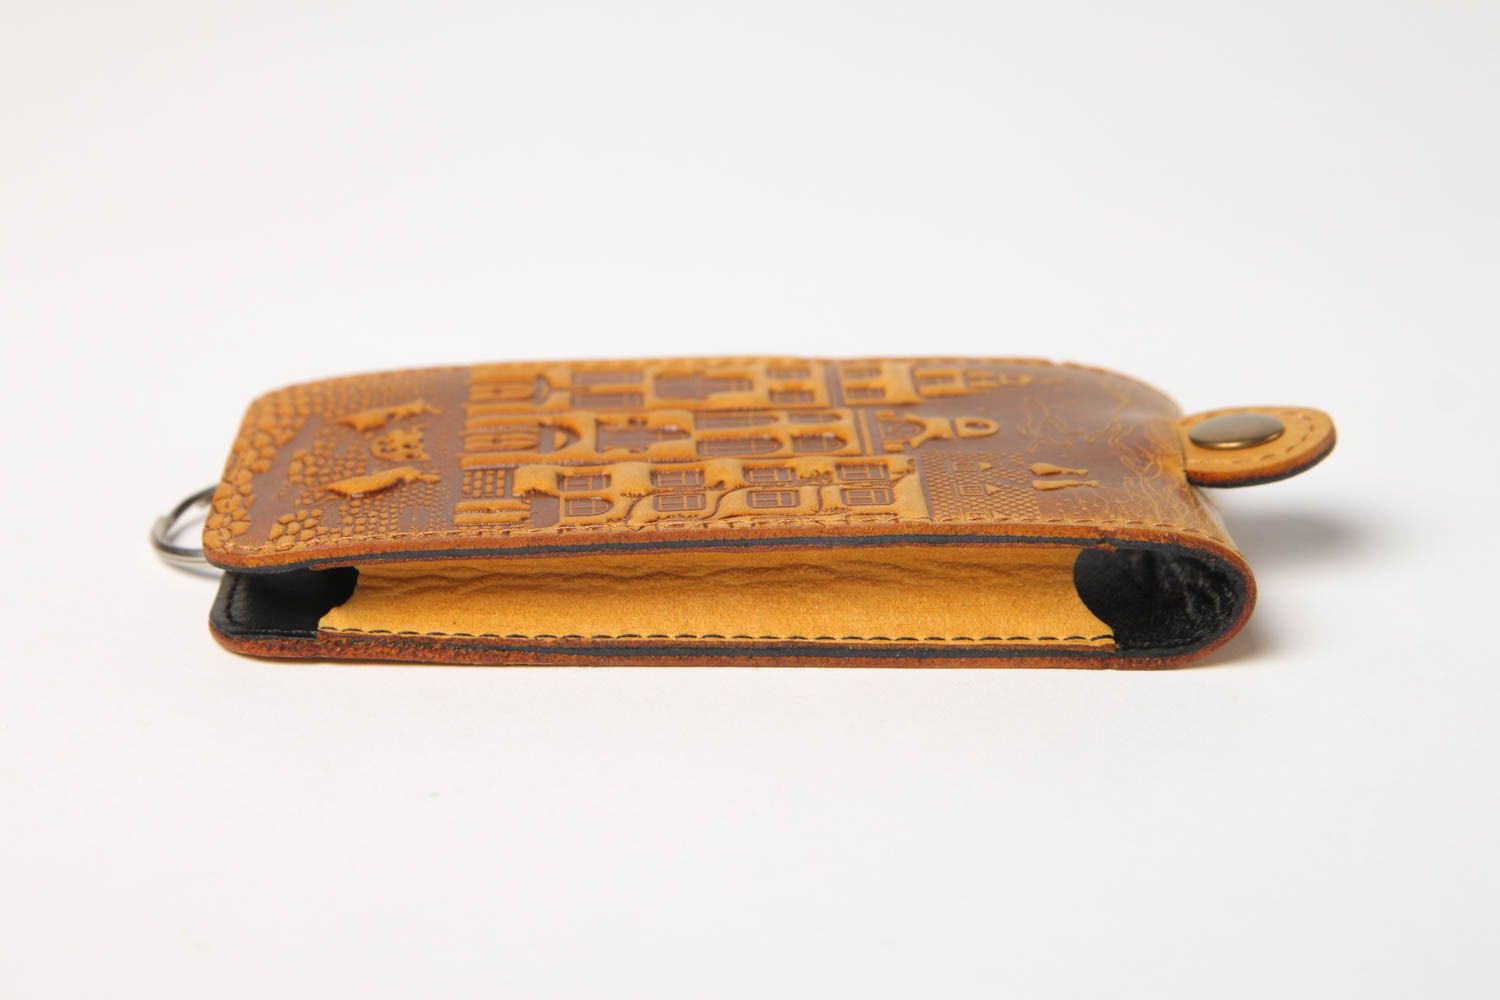 Unusual handmade leather key purse stylish key holder leather goods gift ideas photo 3